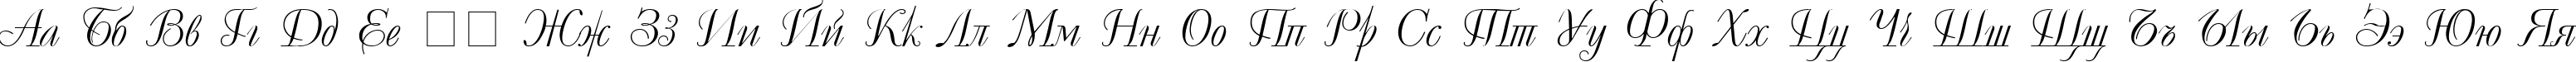 Пример написания русского алфавита шрифтом Decor Cyrillic